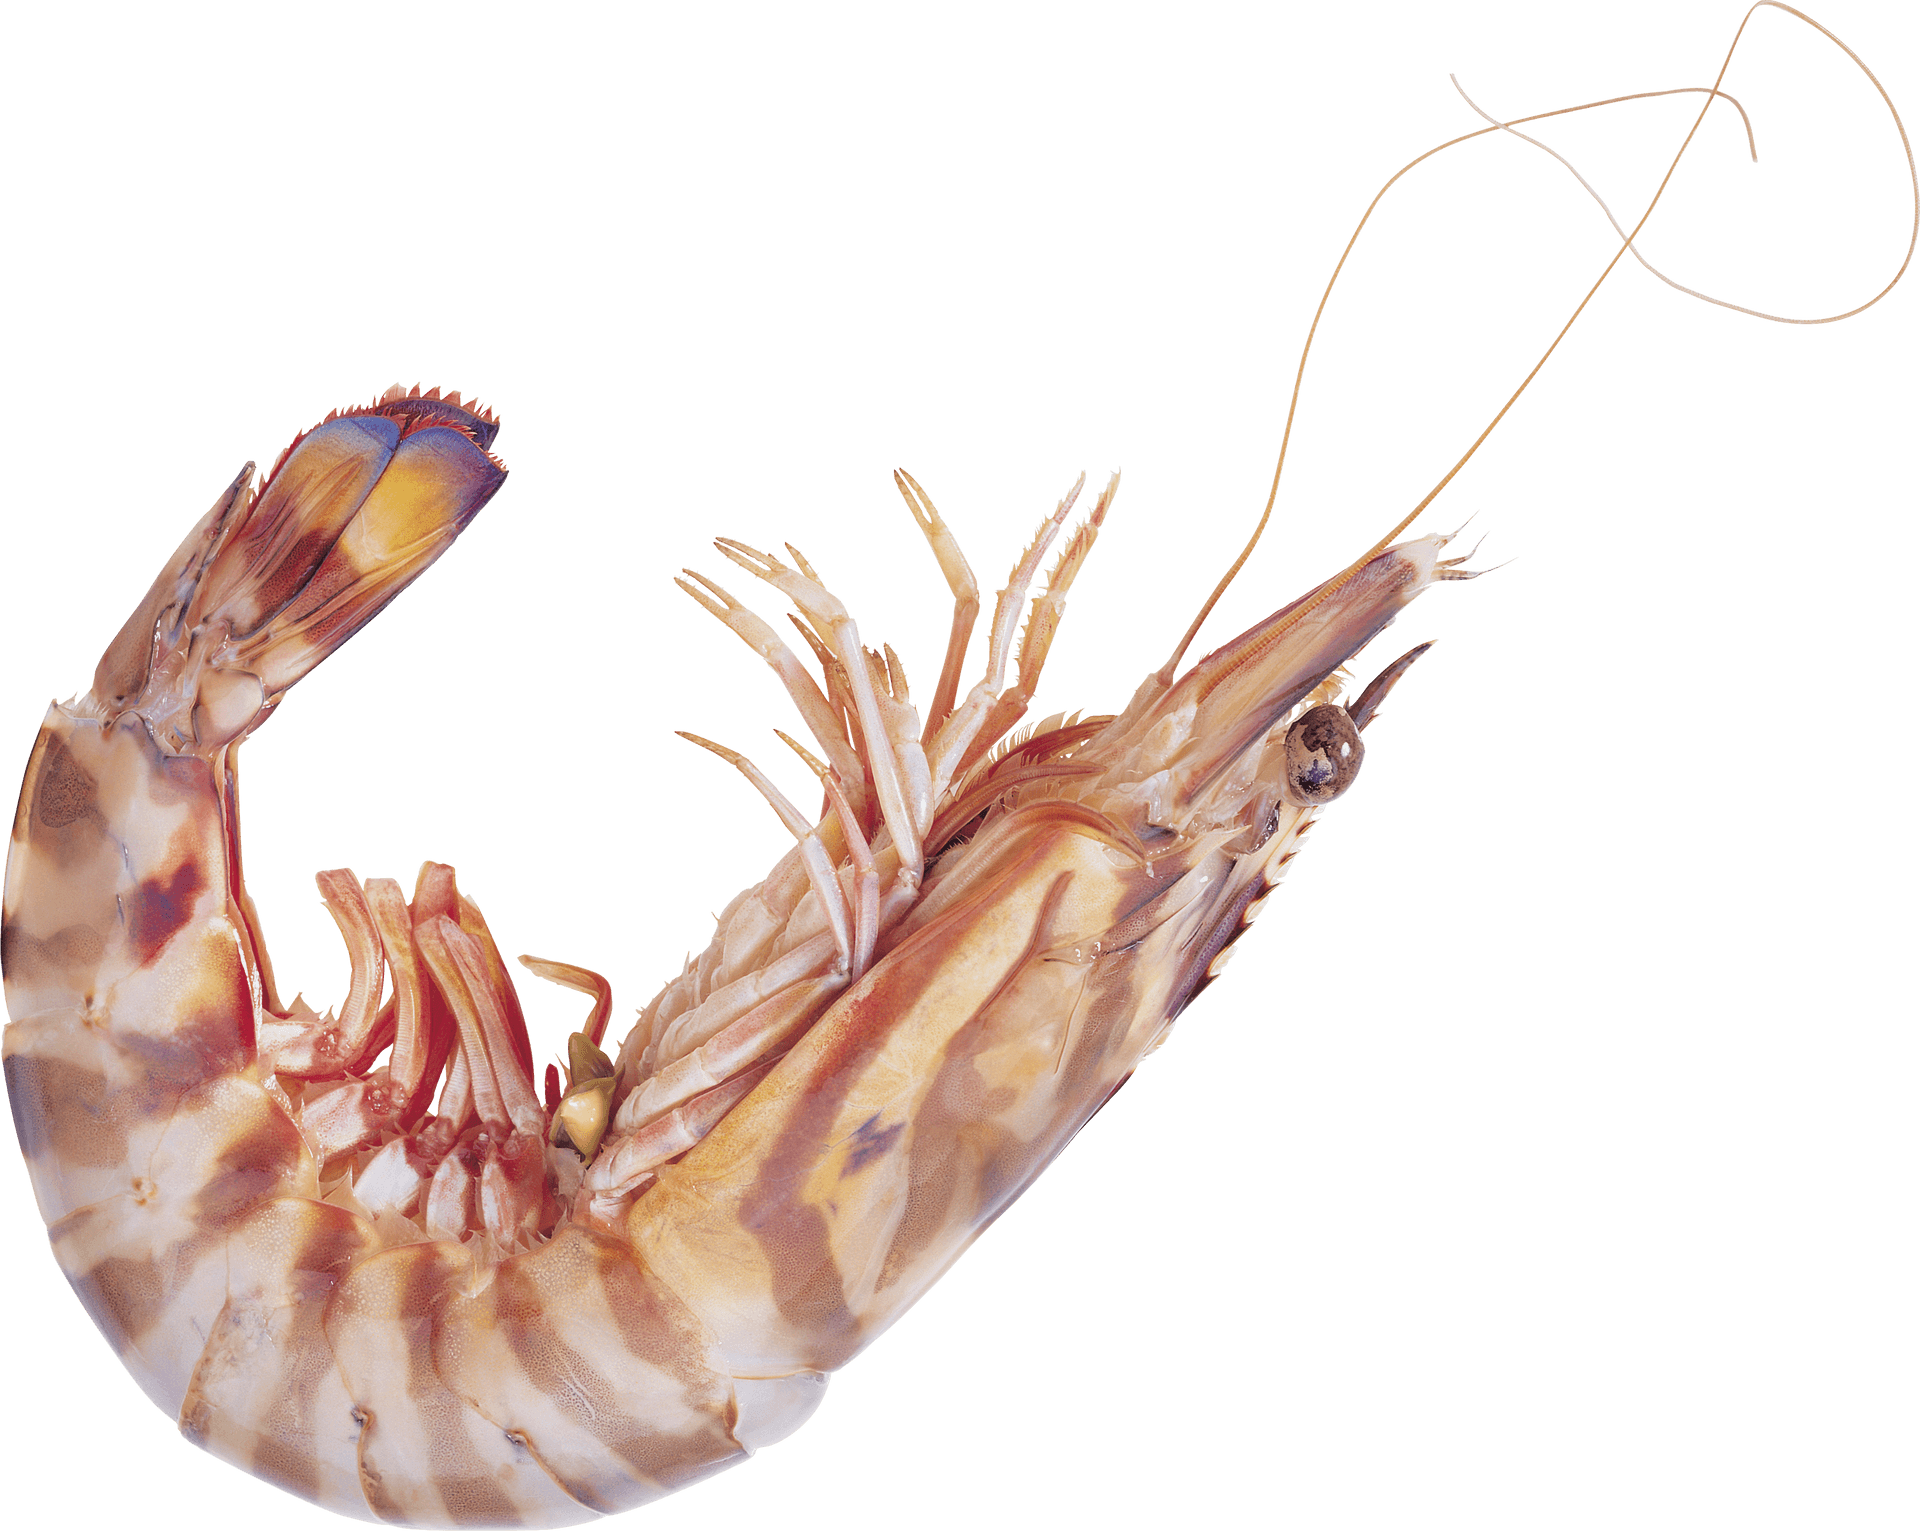 Single Cooked Shrimp Transparent Background PNG